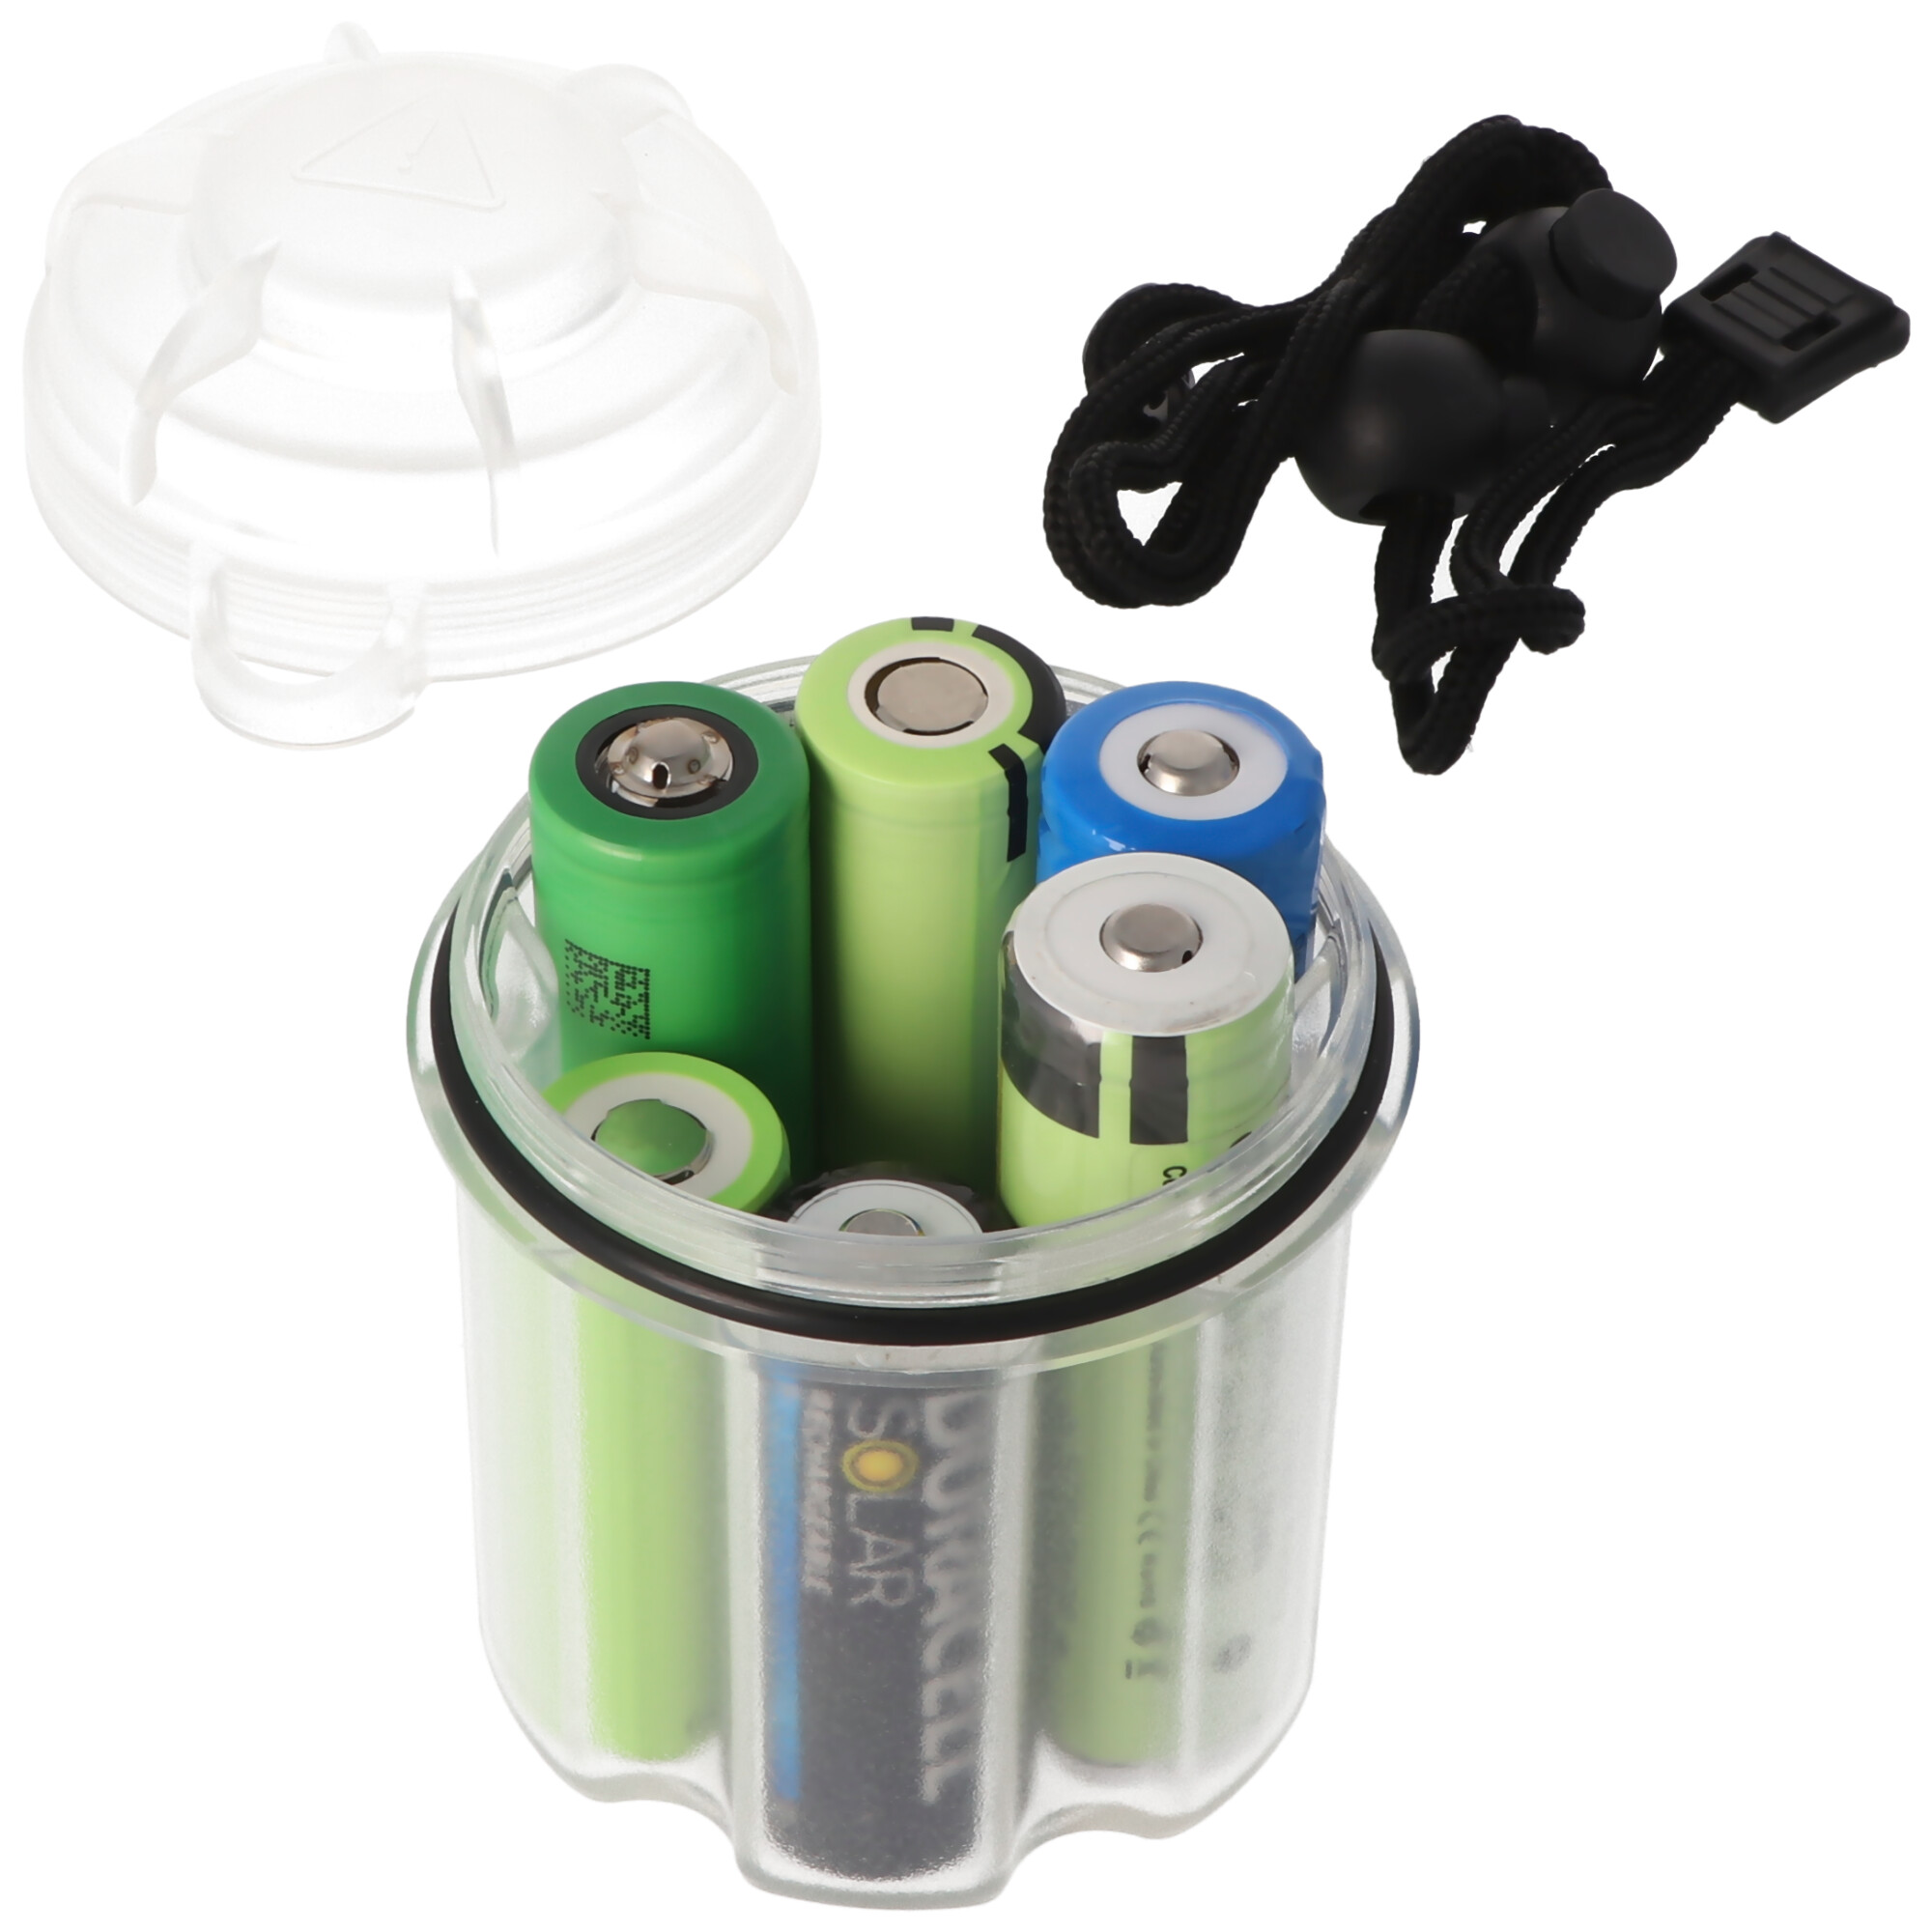 AccuSafe die AkkuBox für 1-6 18650 oder 1-12 CR123 Batterien und Akkus, wasserdicht